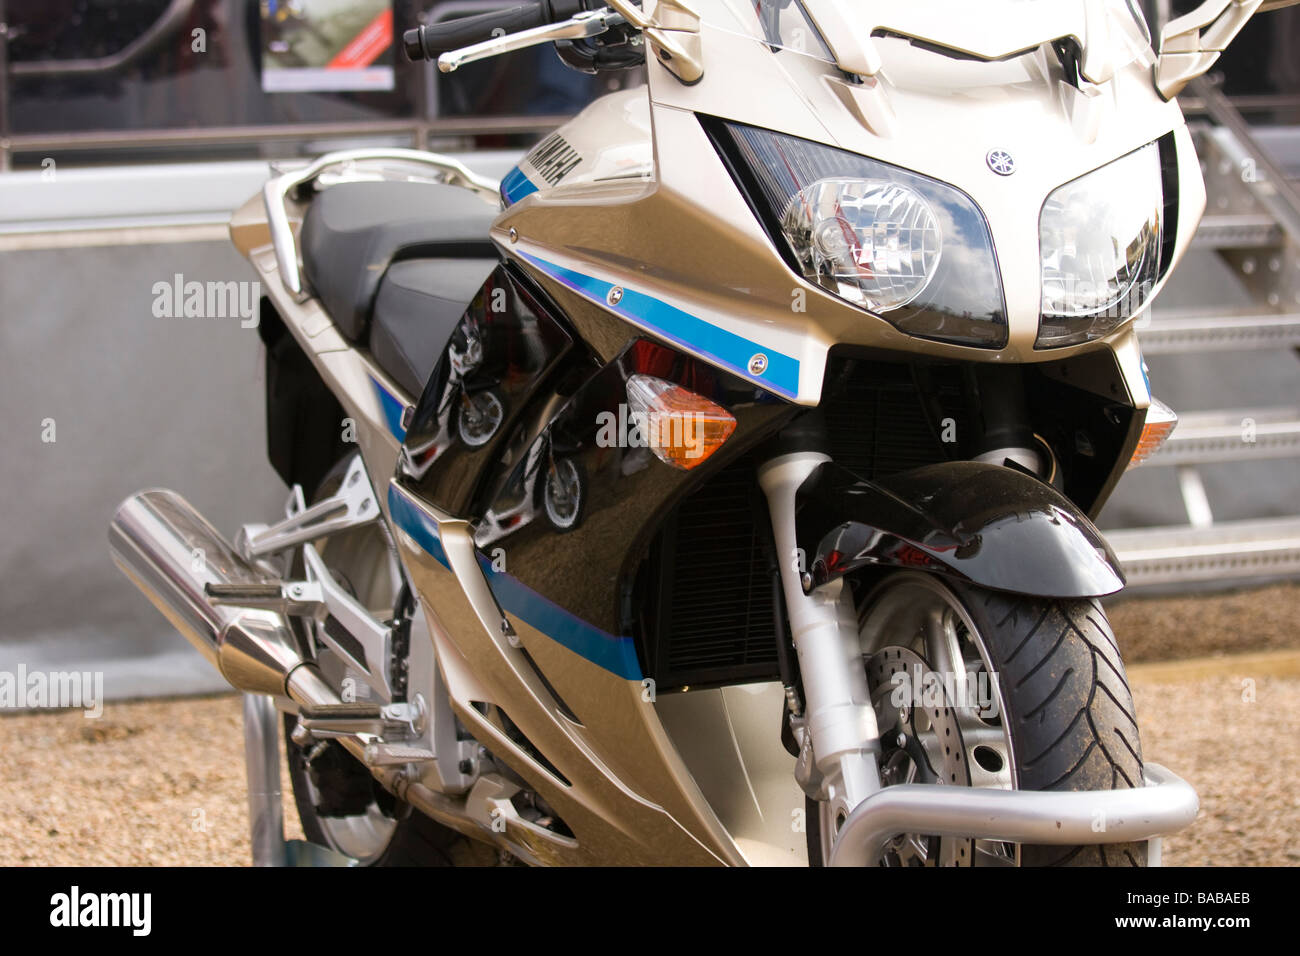 Yamaha Motorrad-Vorderansicht Stockfoto